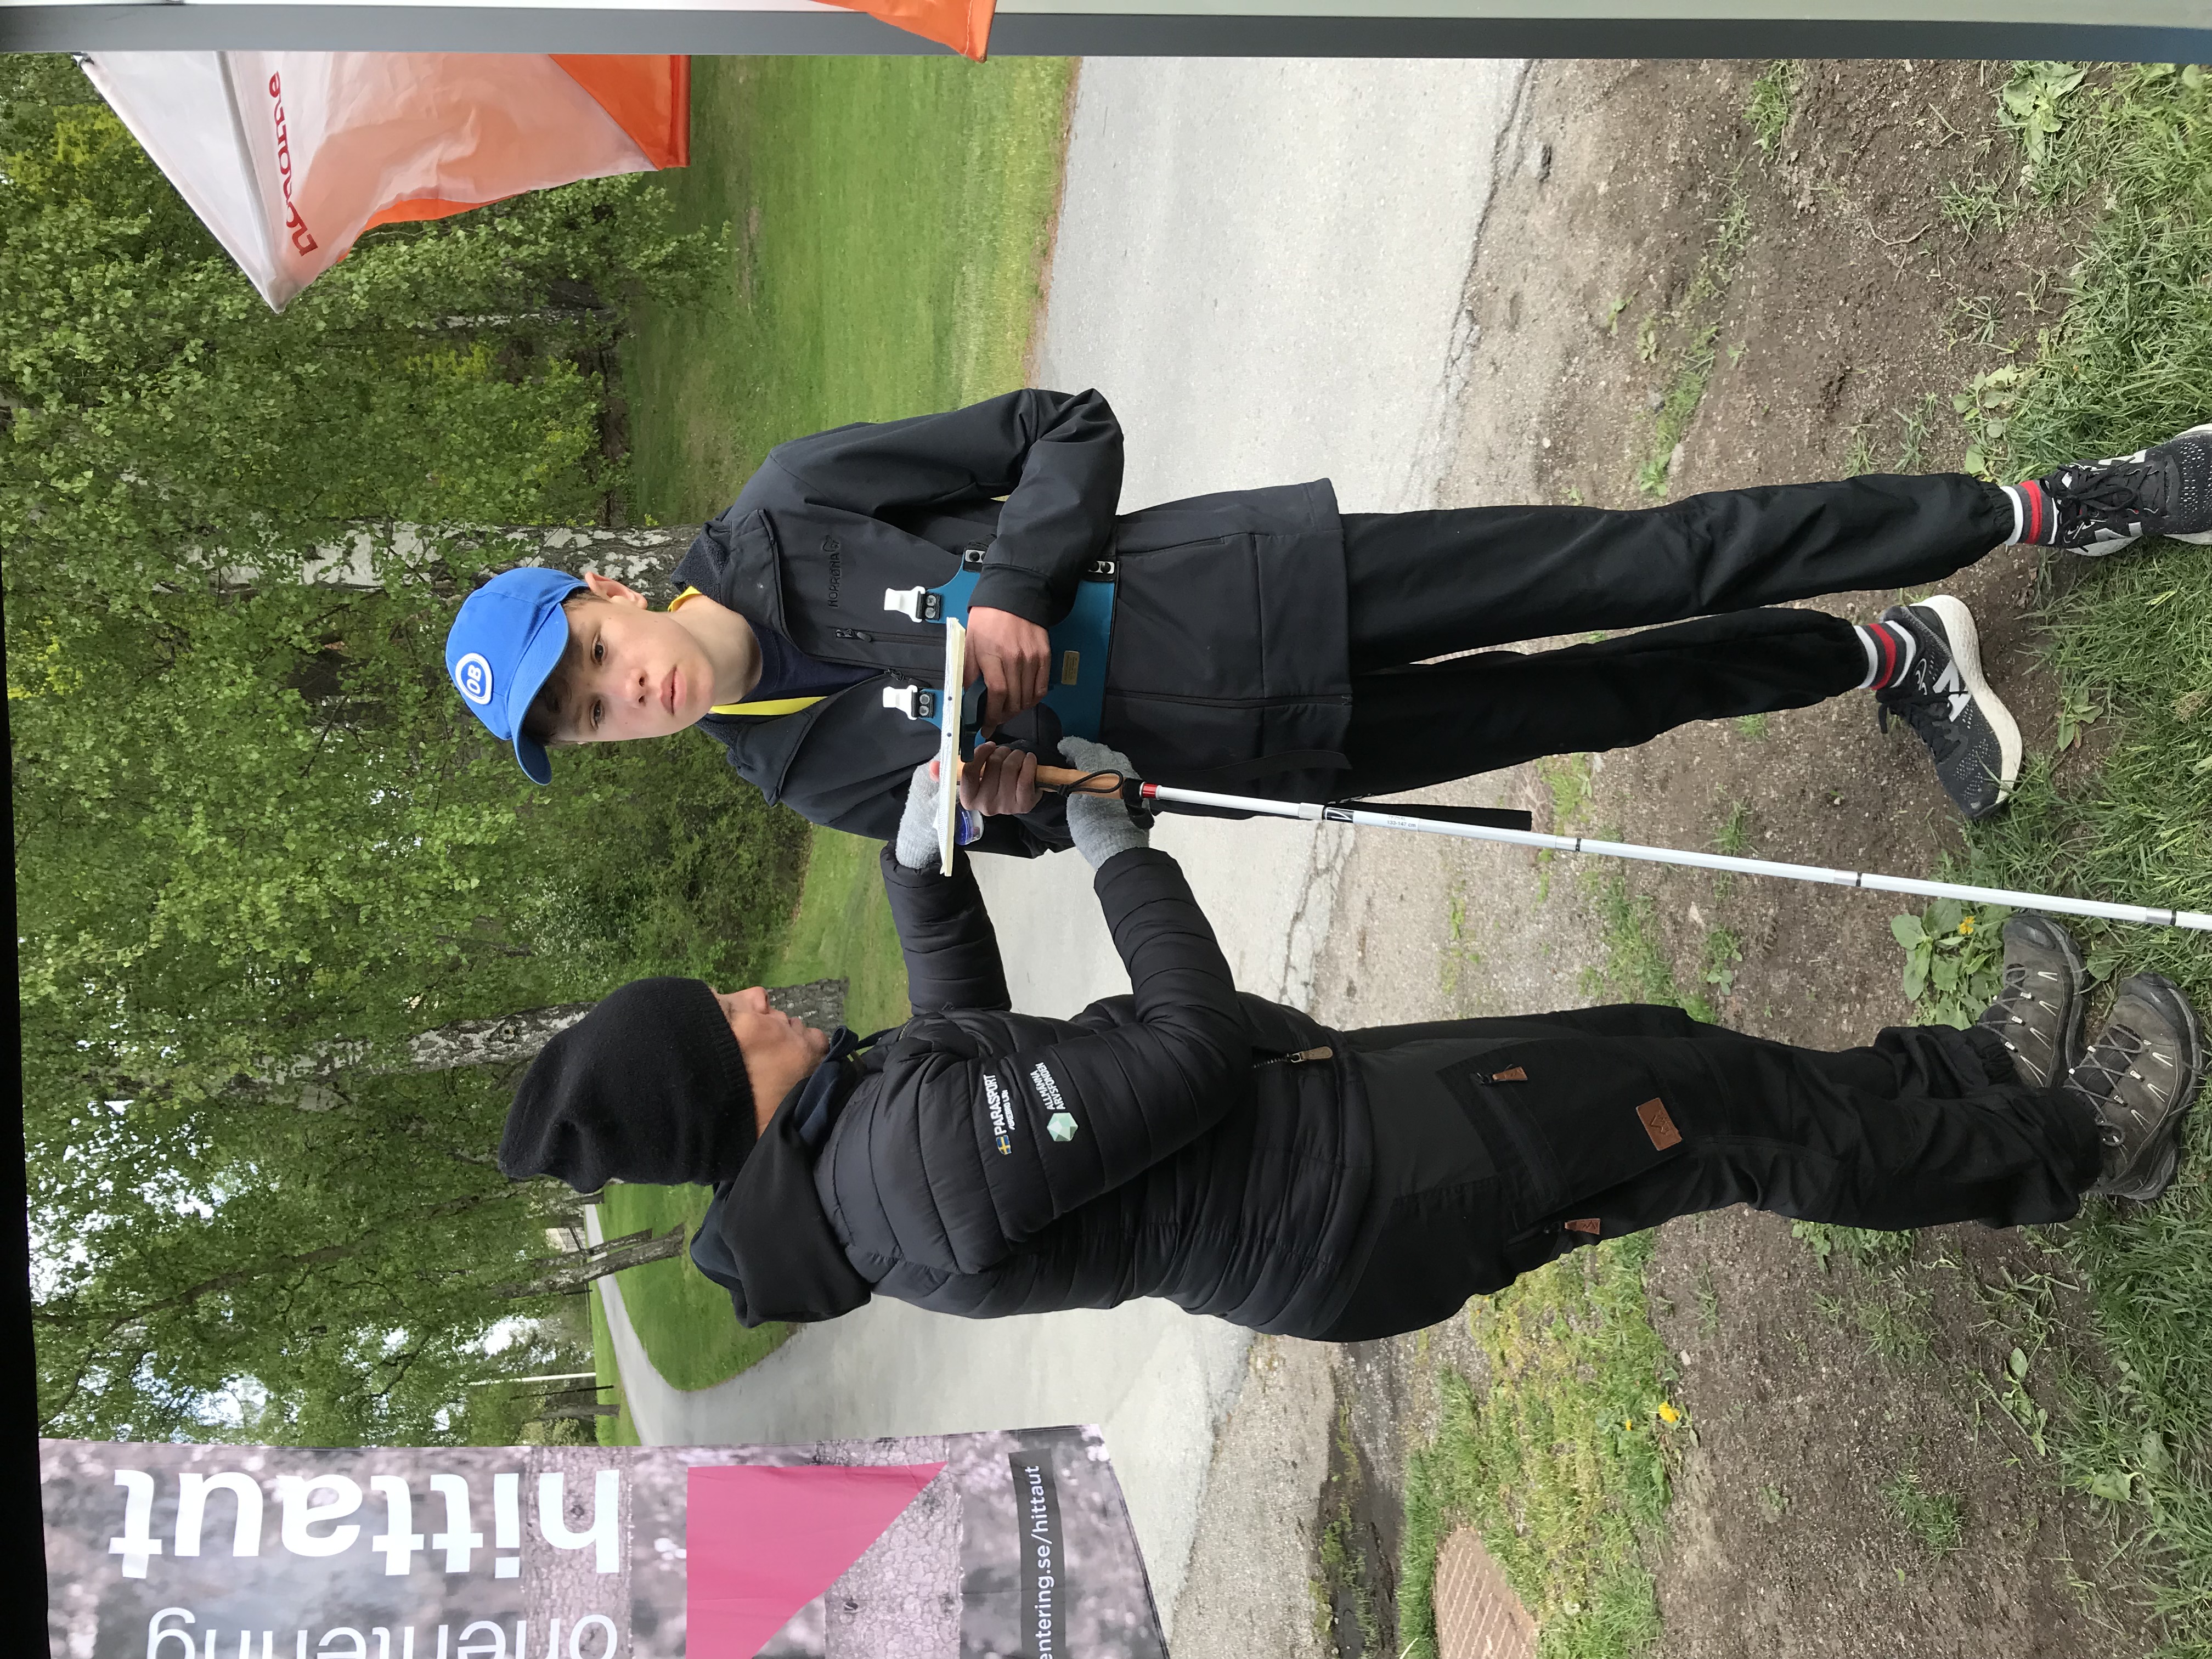 Dags för deltagaren med blindhet att ge sig ut på orienteringsbanan. Kartan sitter i ett skidorienteringskartställ och är taktil, alltså kännbar.